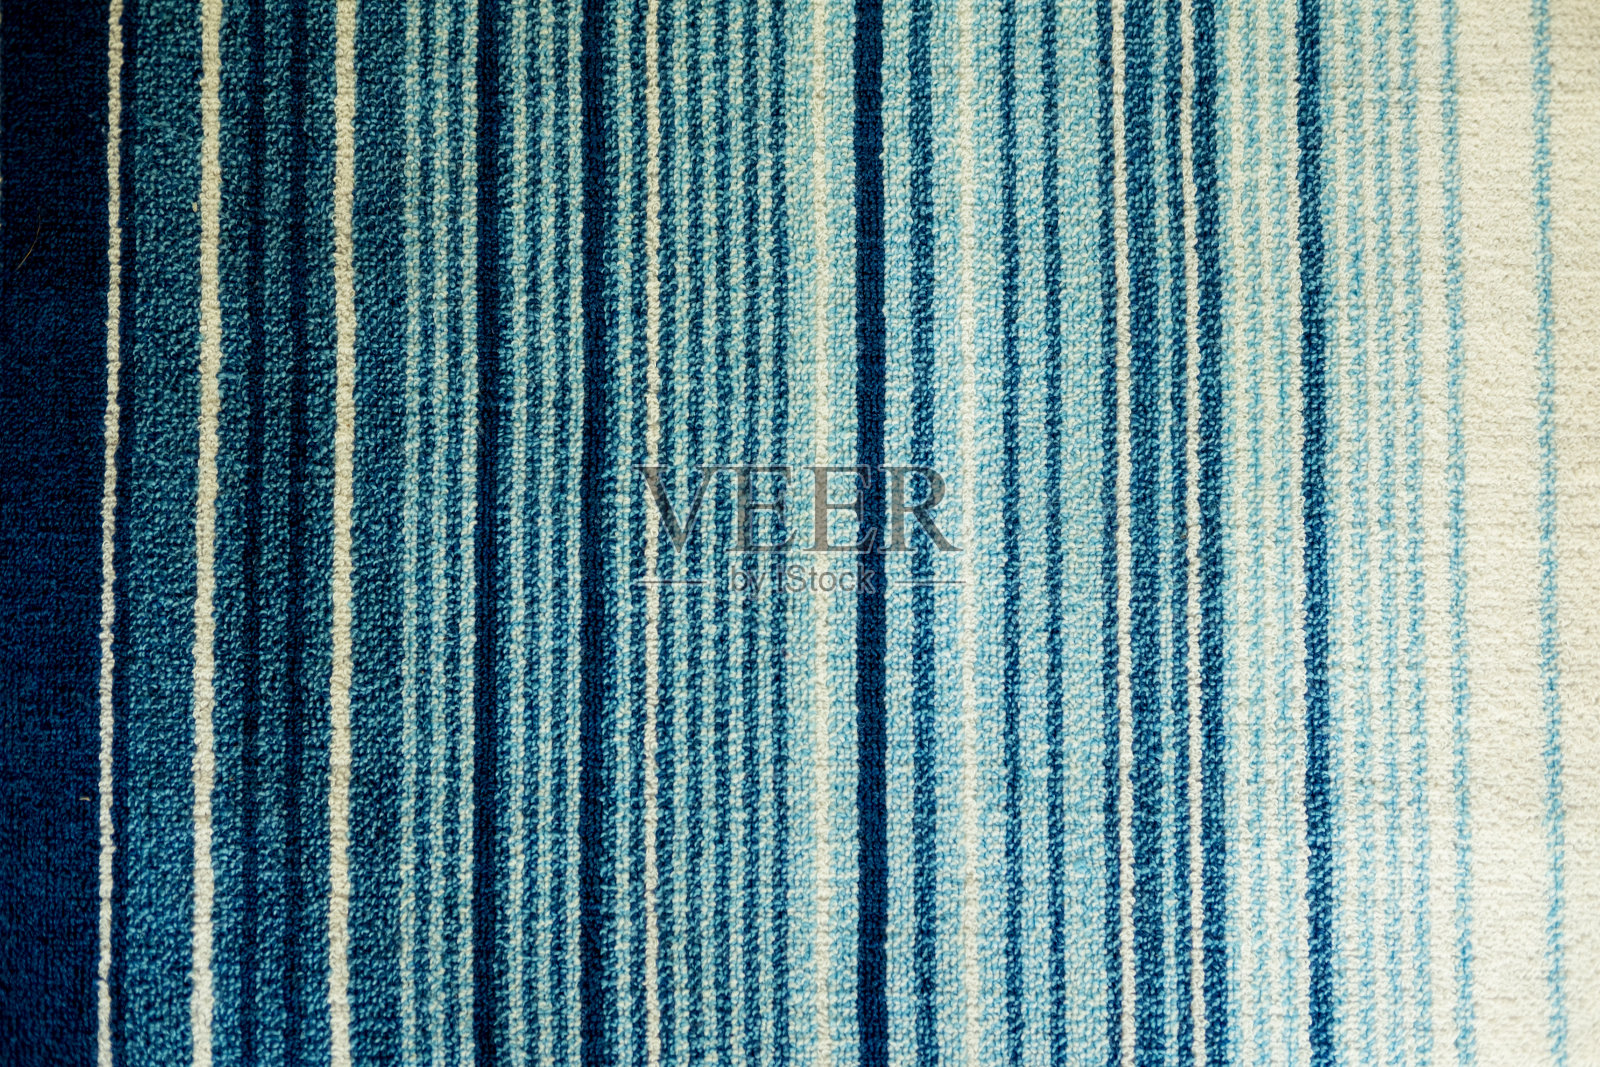 织物地毯的纹理有白色和蓝色的条纹图案照片摄影图片